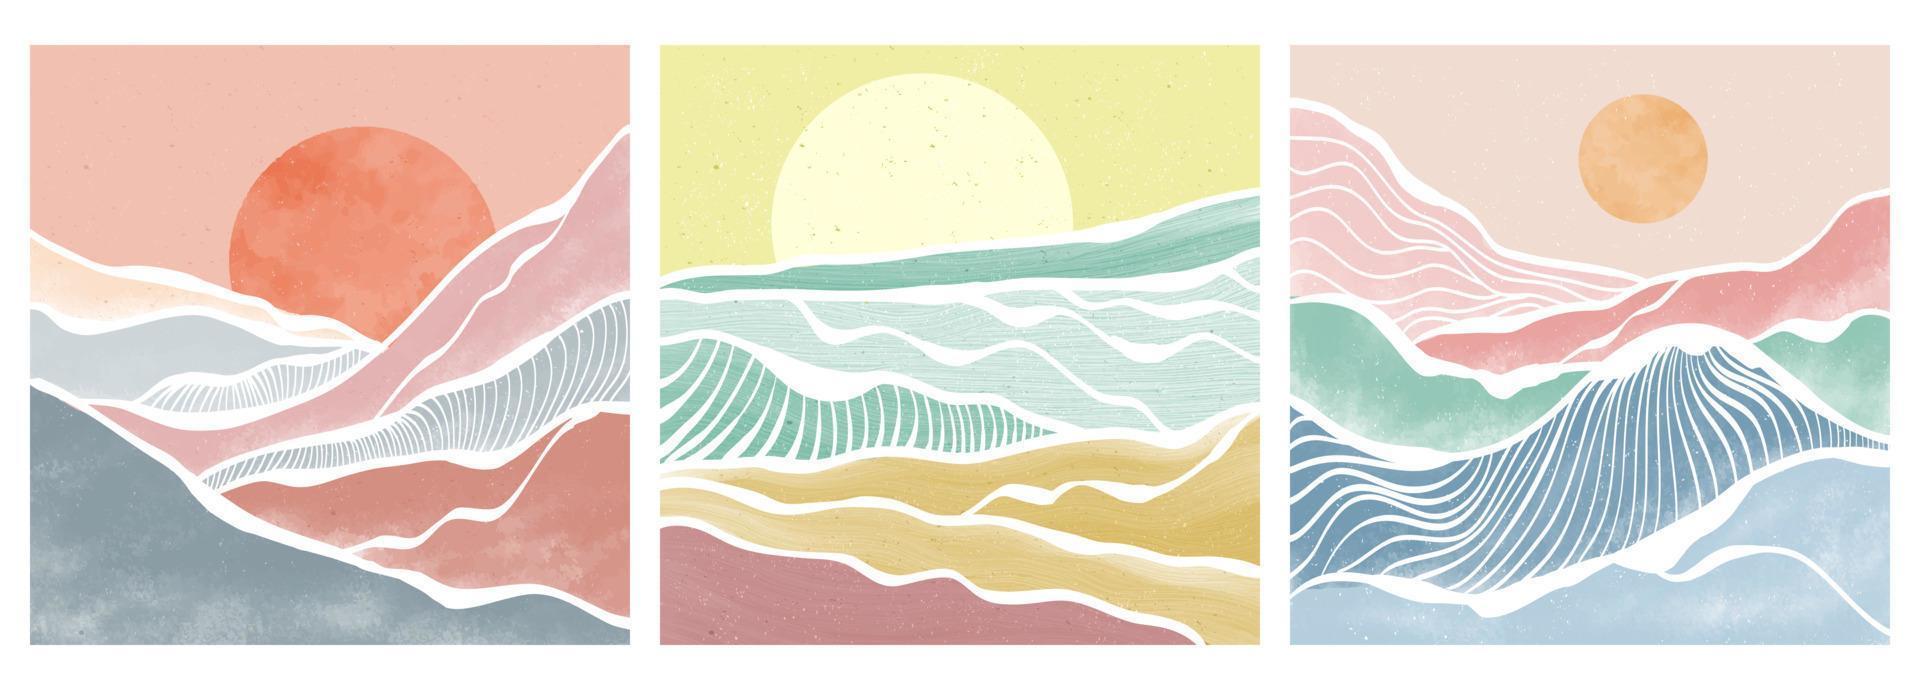 montagna e onda dell'oceano sul set. sfondi astratti contemporanei estetici paesaggi. illustrazioni vettoriali